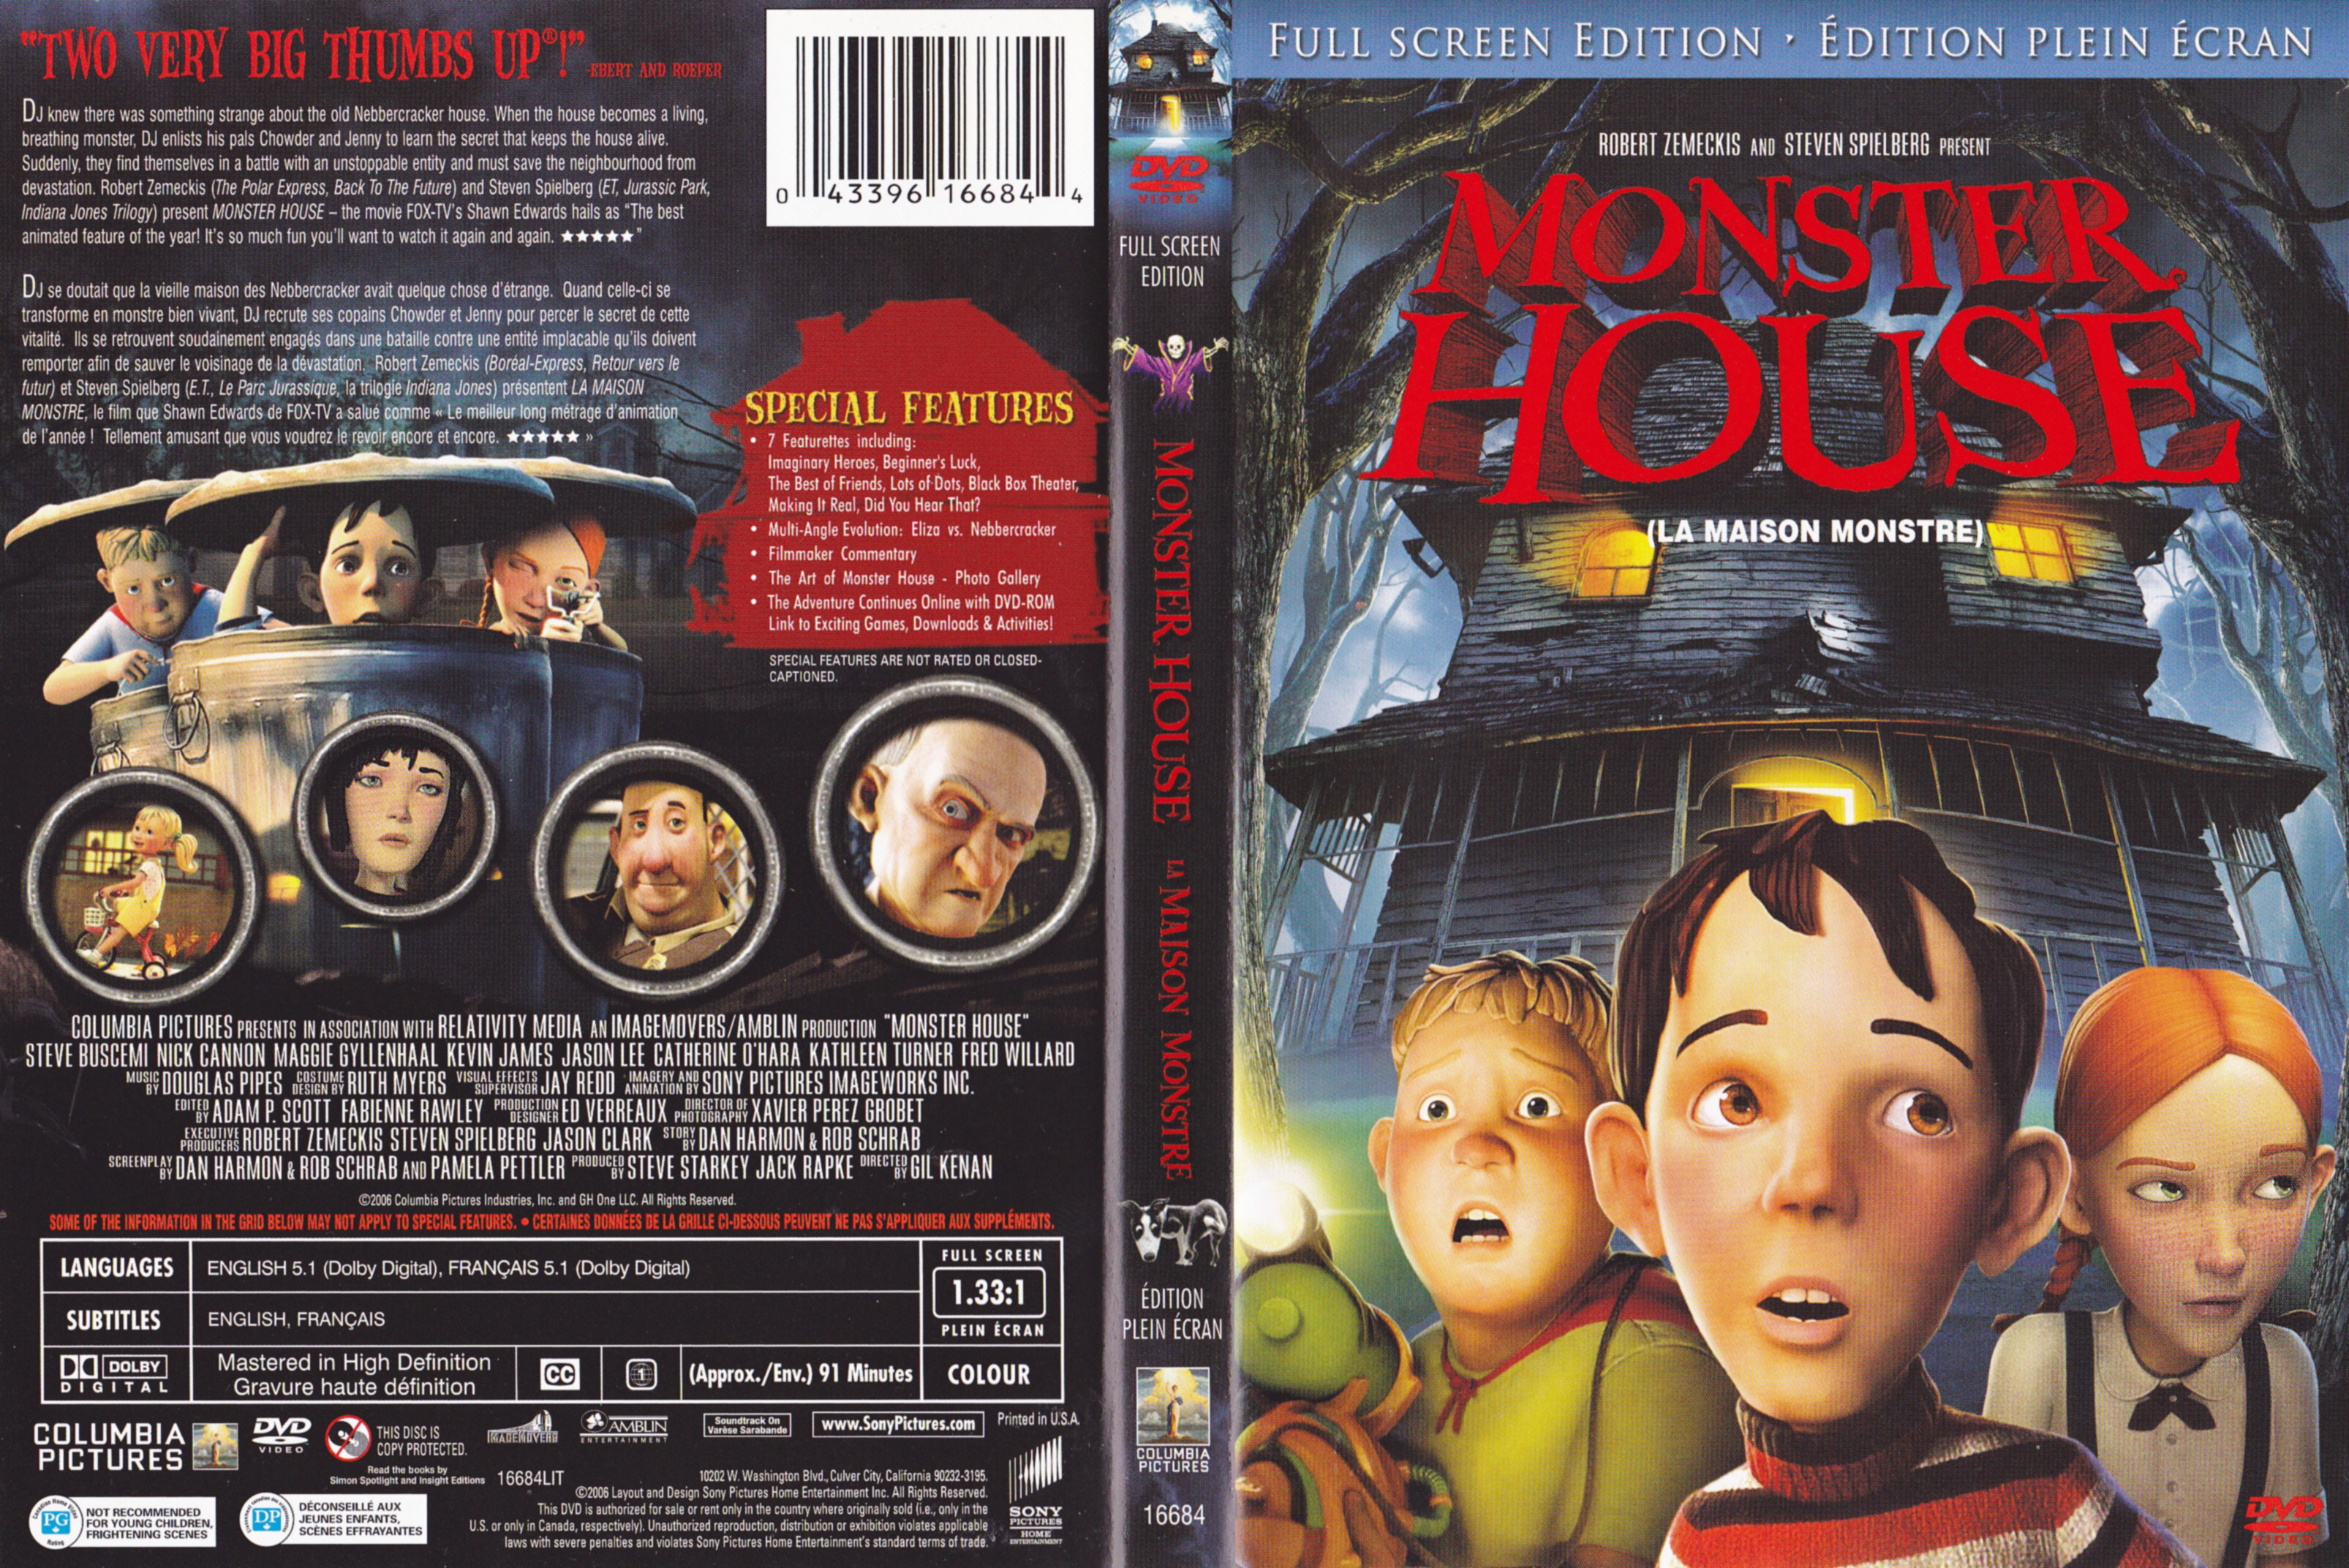 Jaquette DVD La maison monstre - Monster house (Canadienne)